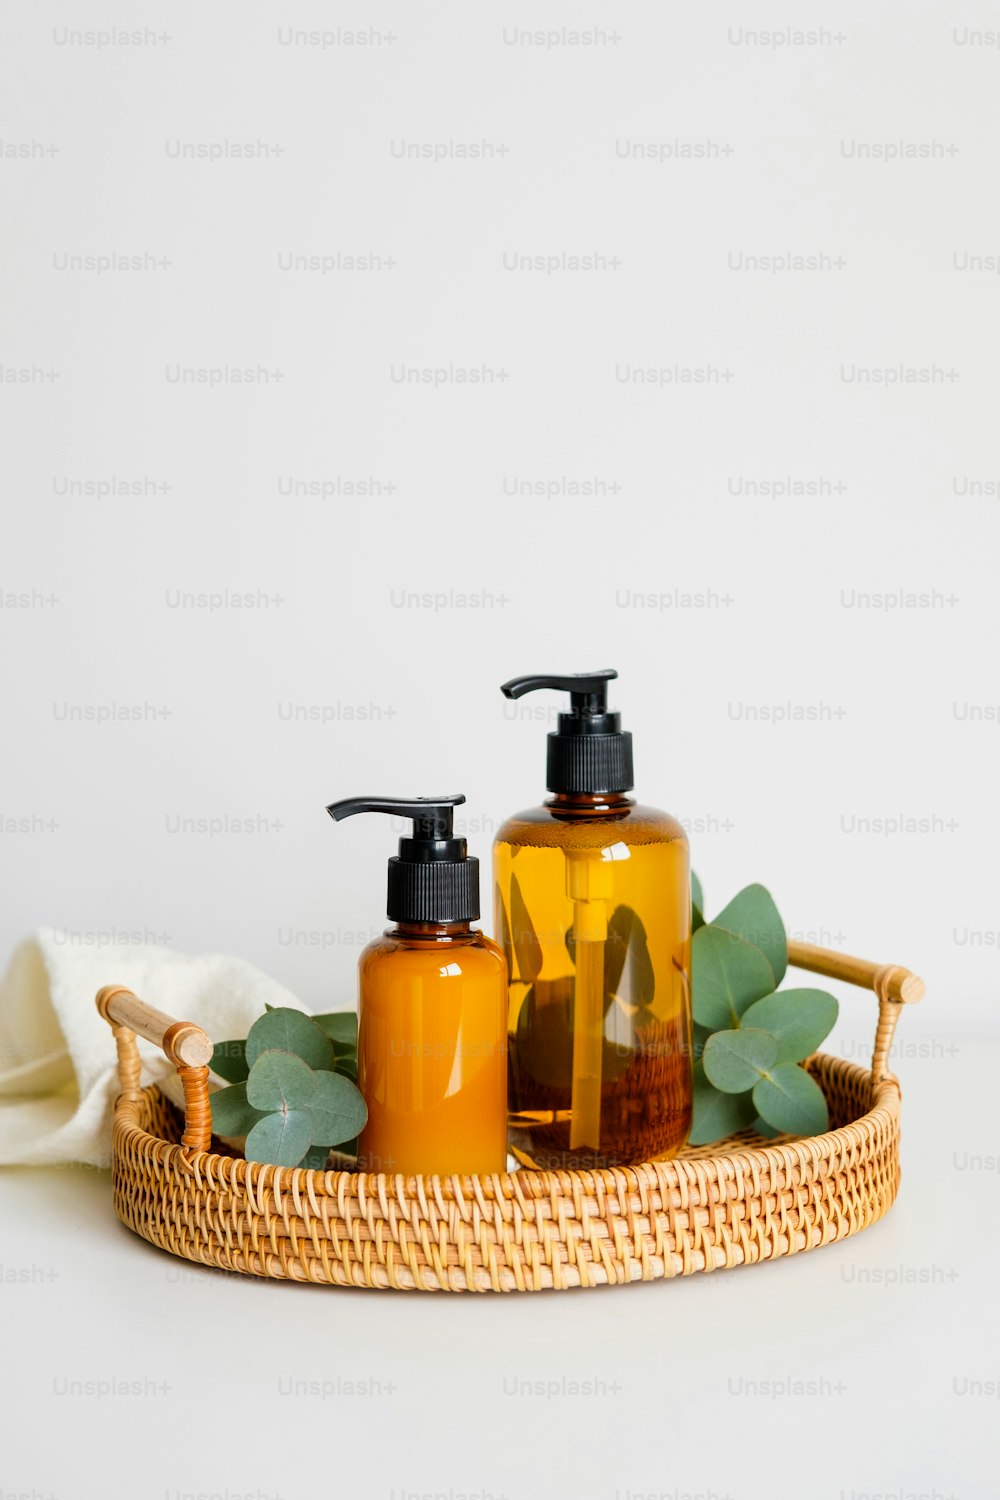 Rattantablett mit bernsteinfarbenen Glaspumpflaschen mit Shampoo oder Duschgel, Eukalyptuspflanzenzweigen, Handtuch. SPA natürliche Biokosmetik auf dem Tisch im Badezimmer.